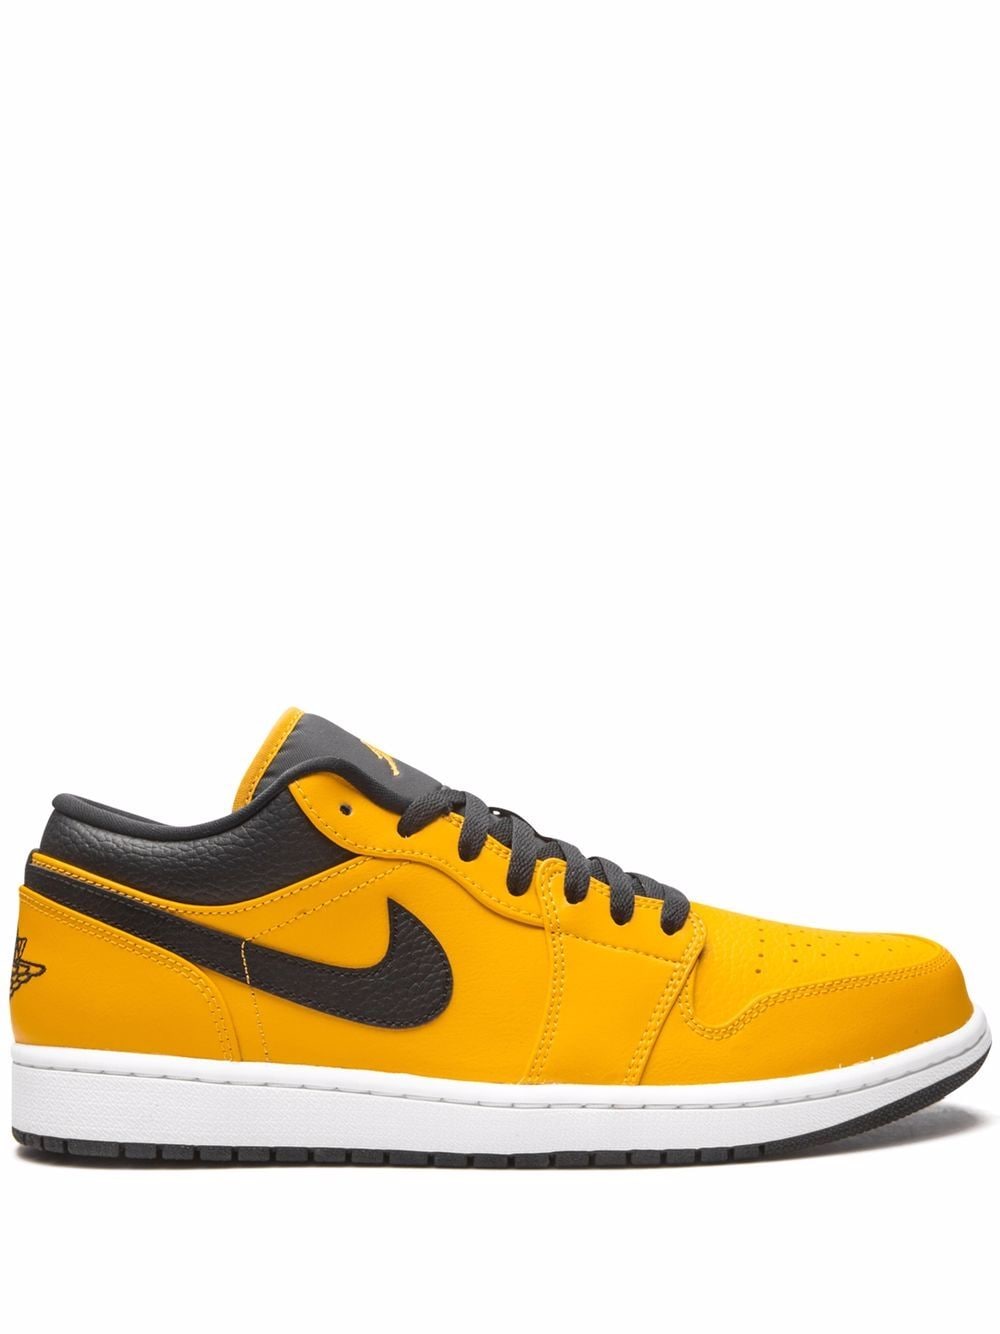 Jordan Air Jordan 1 Low "University Gold/Black" sneakers - Yellow von Jordan